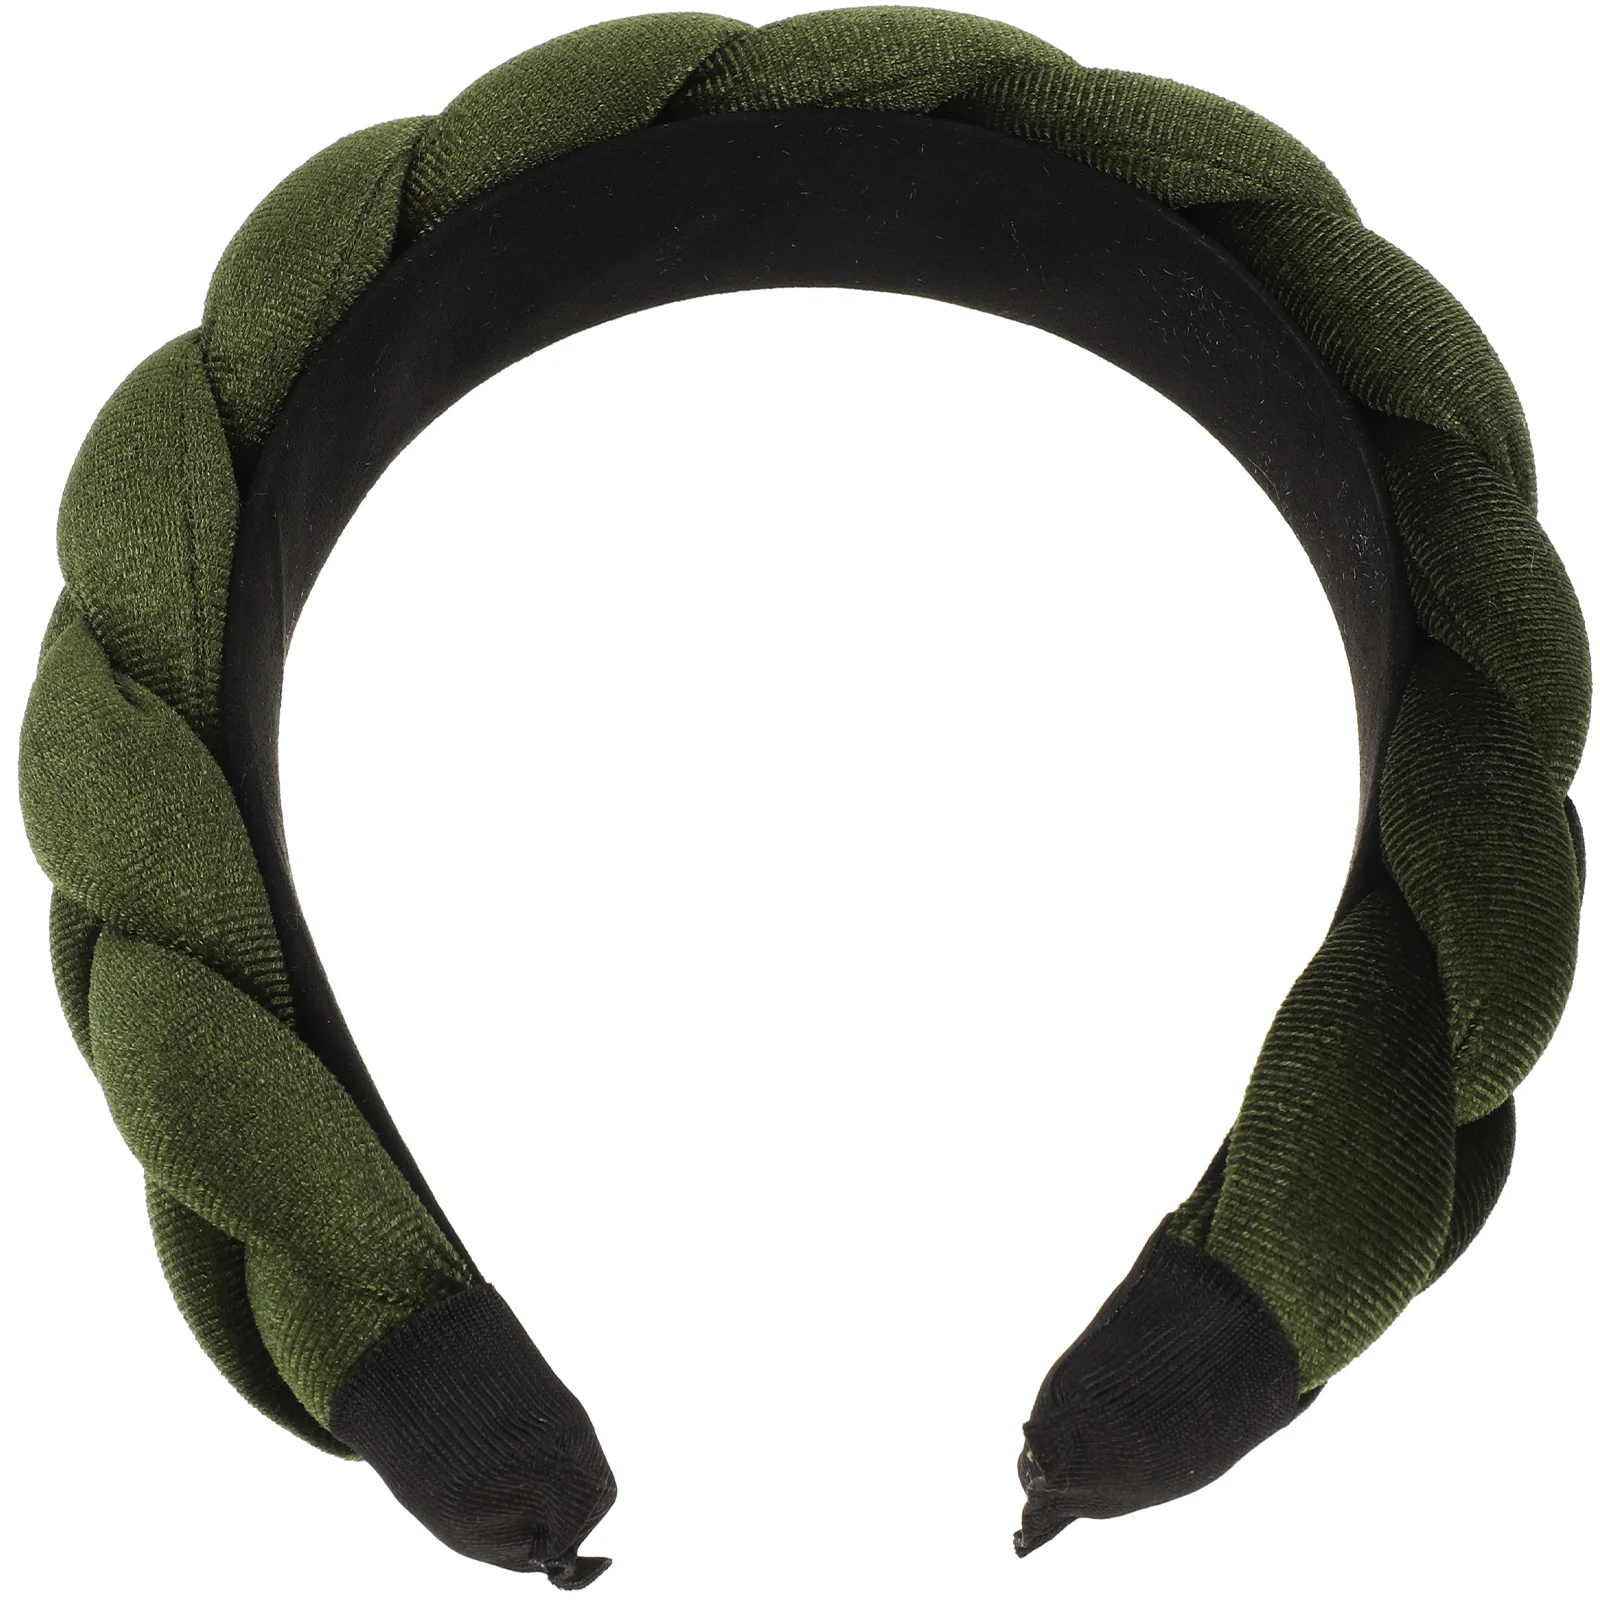 

Плетеная повязка на голову для спа, женский головной убор, повязка на голову для мытья лица, обруч для волос, плотный плетеный галстук